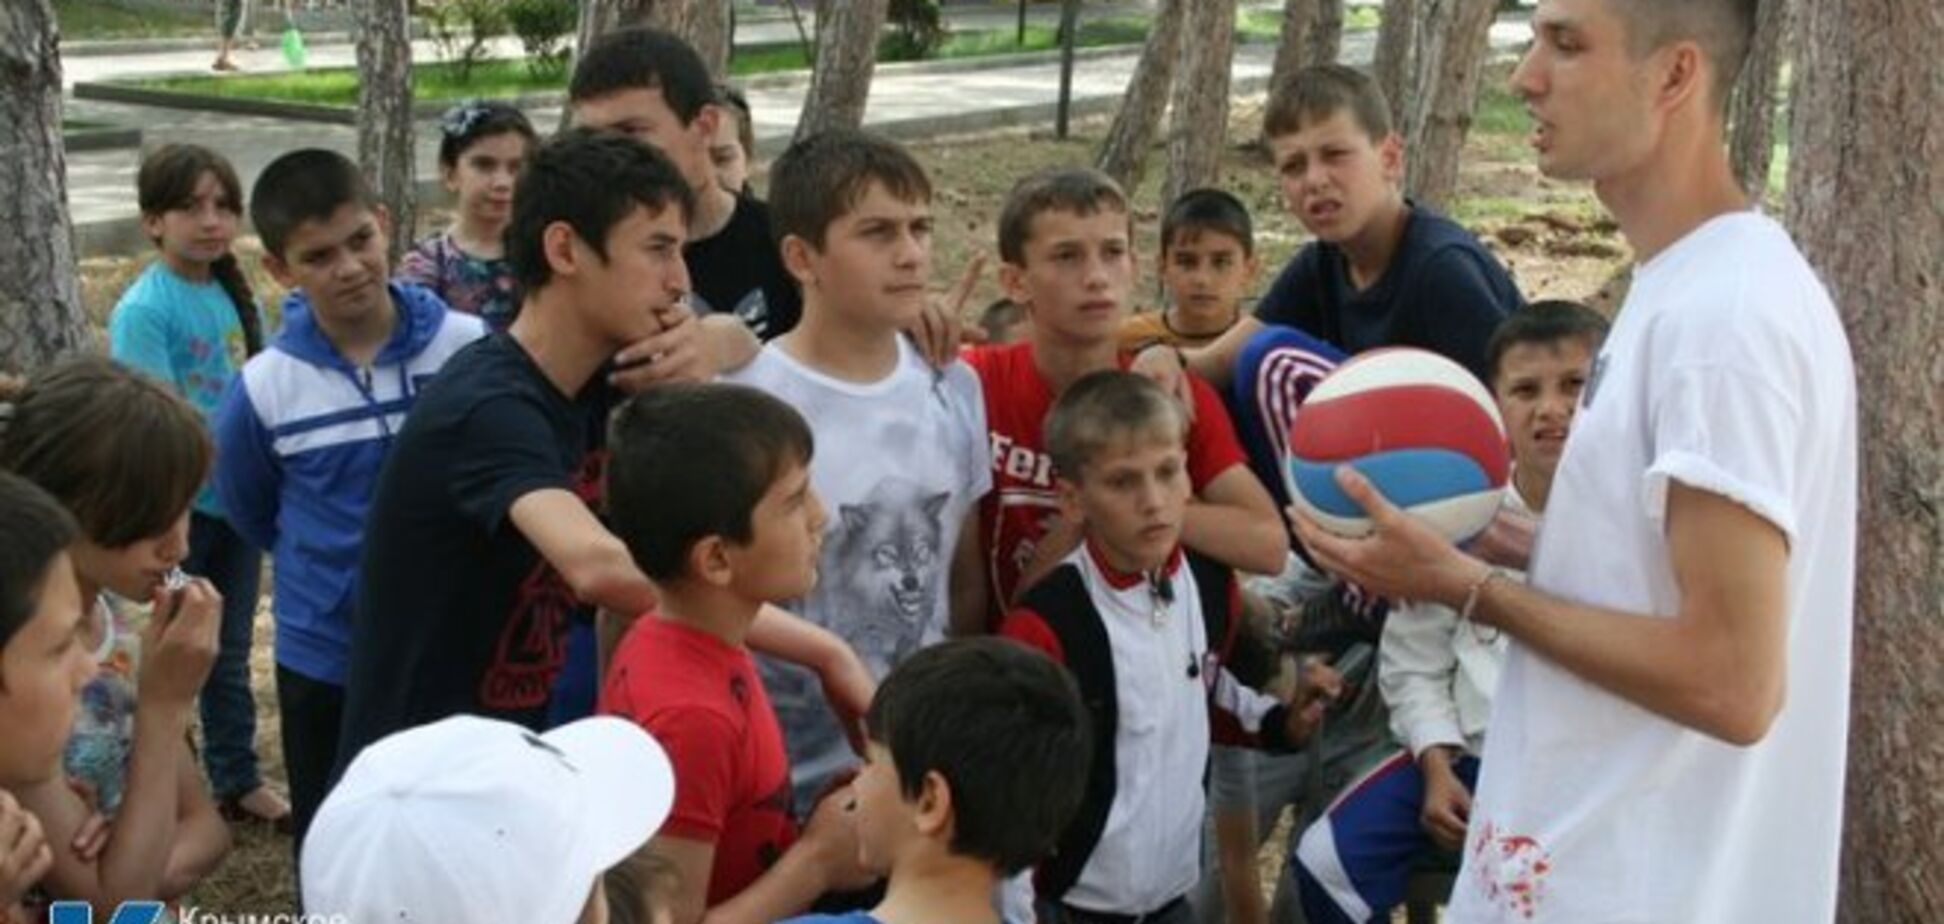 Перші 600 чеченських дітей прибули на відпочинок до Криму